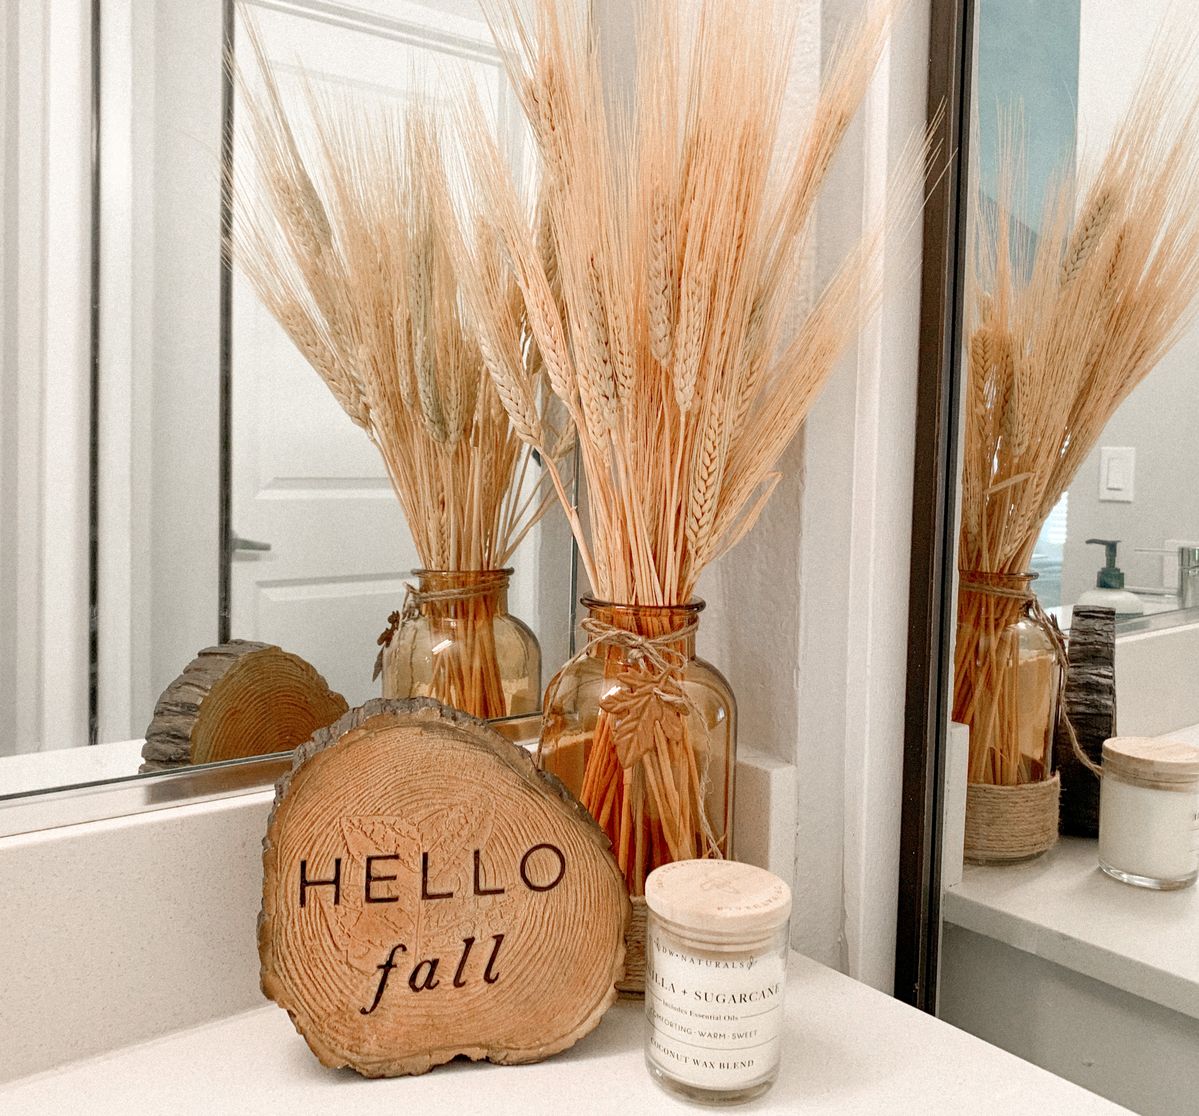 Bạn từng trang trí nhà với cây lúa mì chưa? Nếu chưa, hãy “bắt chước” phòng tắm này nhé. Khúc gỗ 'Hello Fall' kết hợp lúa mì cho không gian mộc mạc đón Thu về. 